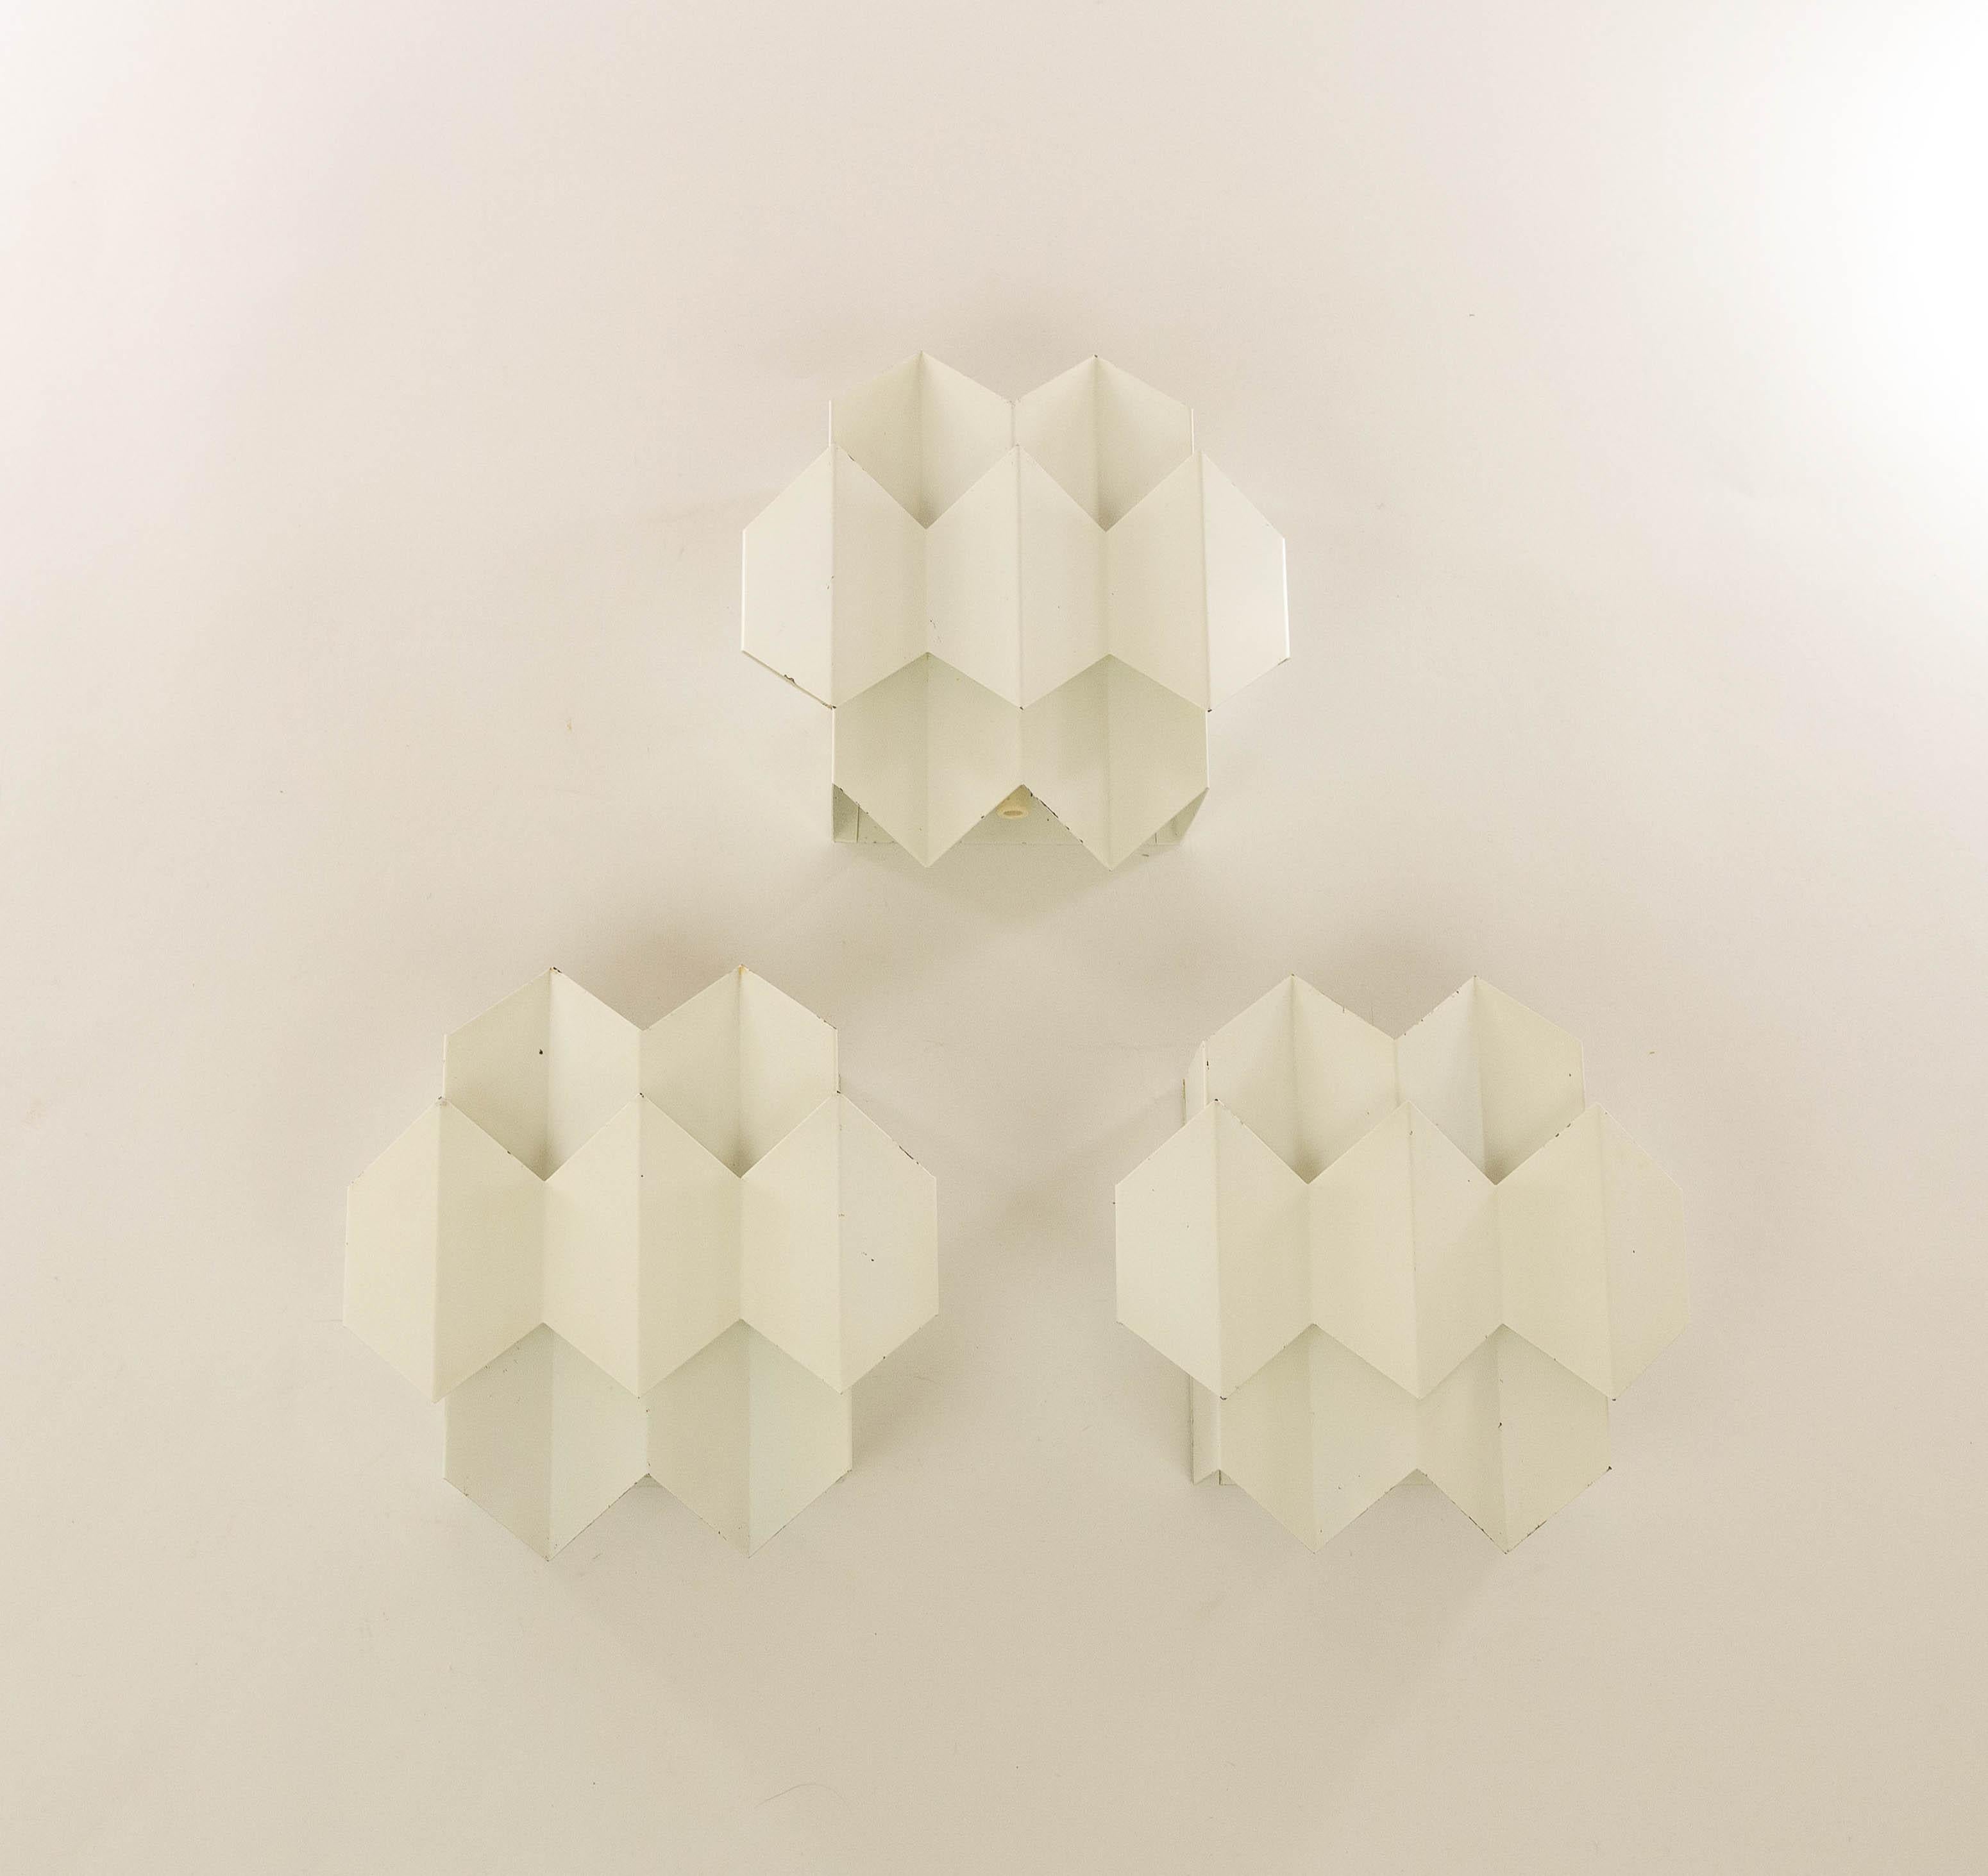 Set aus drei weißen, geometrischen Septet-Wandleuchten, entworfen von Bent Karlby und hergestellt von Lyfa, Dänemark.

Zwei Lagen gebogenen Blechs bilden spielerisch sieben Sechsecke, die dem Modell seinen Namen gaben: Septett. Die gebogenen Lagen